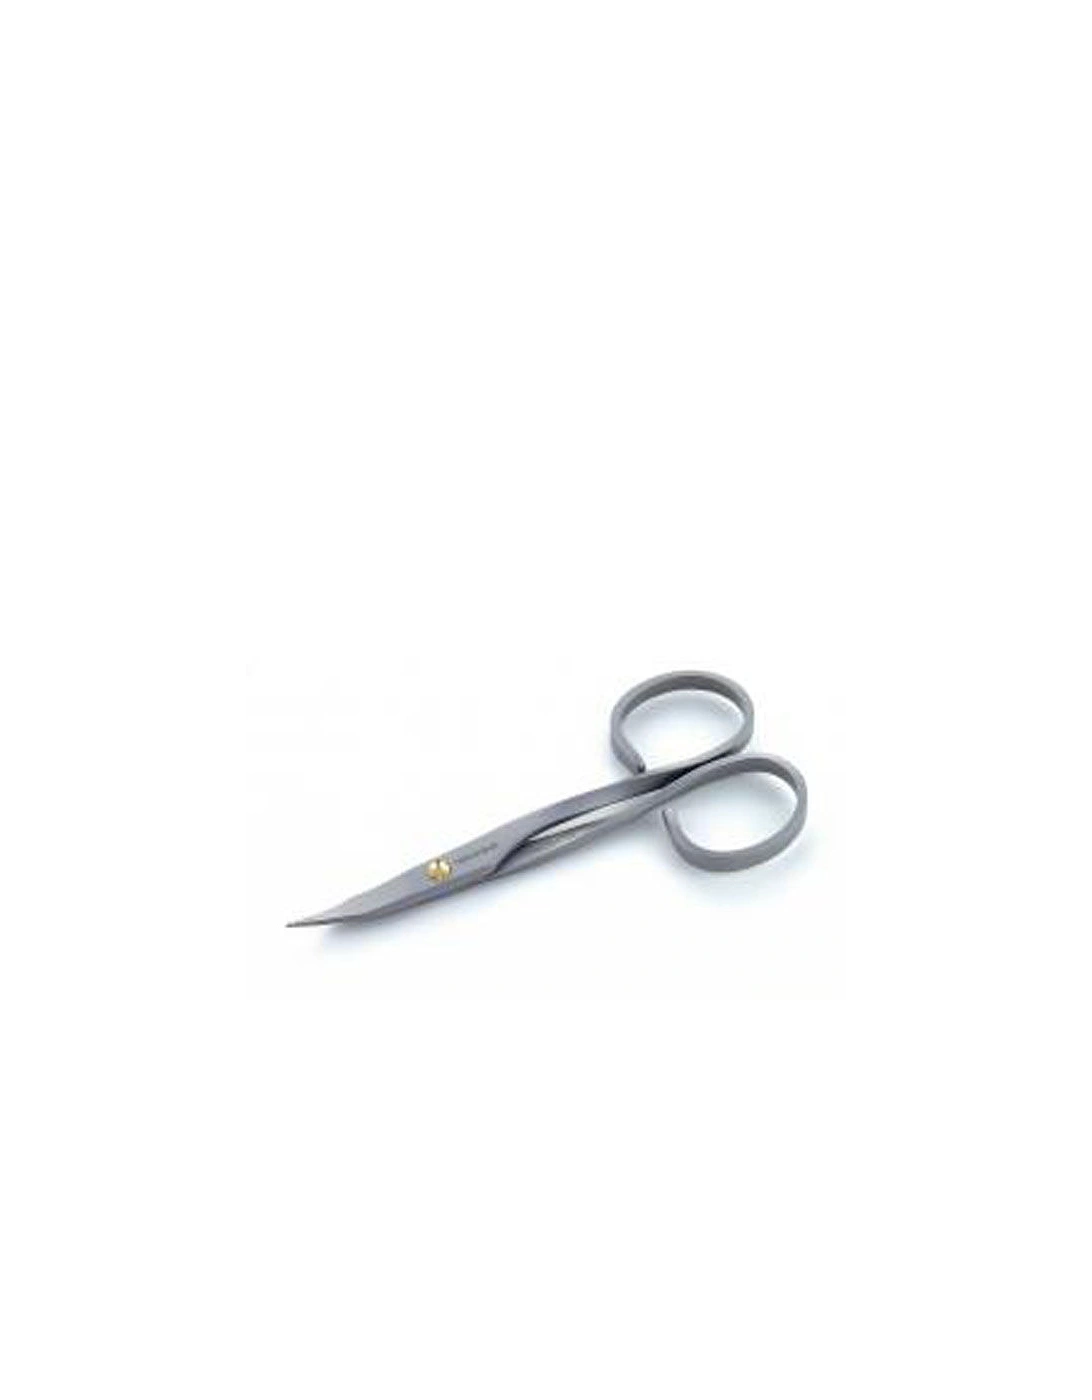 Stainless Steel Nail Scissors - Tweezerman, 2 of 1